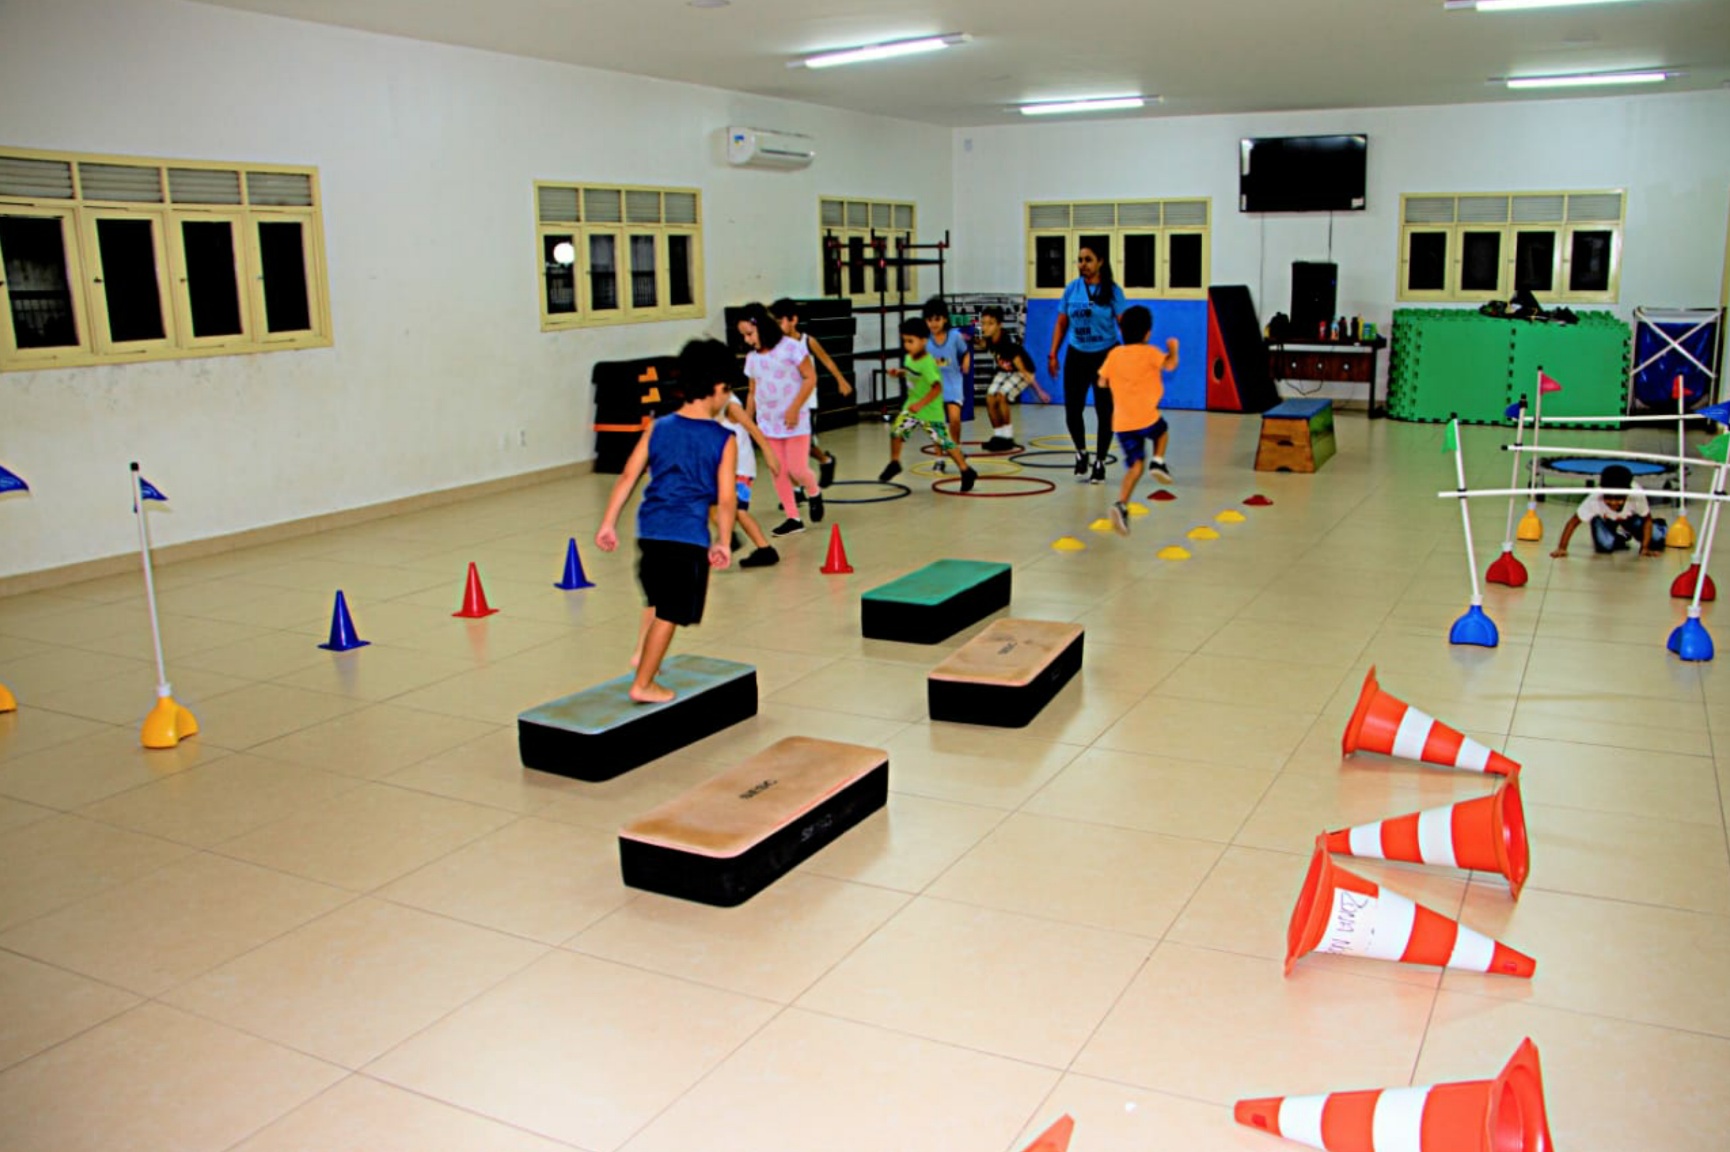 Sesc de SP do Potengi e Nova Cruz com vagas gratuitas para iniciação esportiva infanto-juvenil​